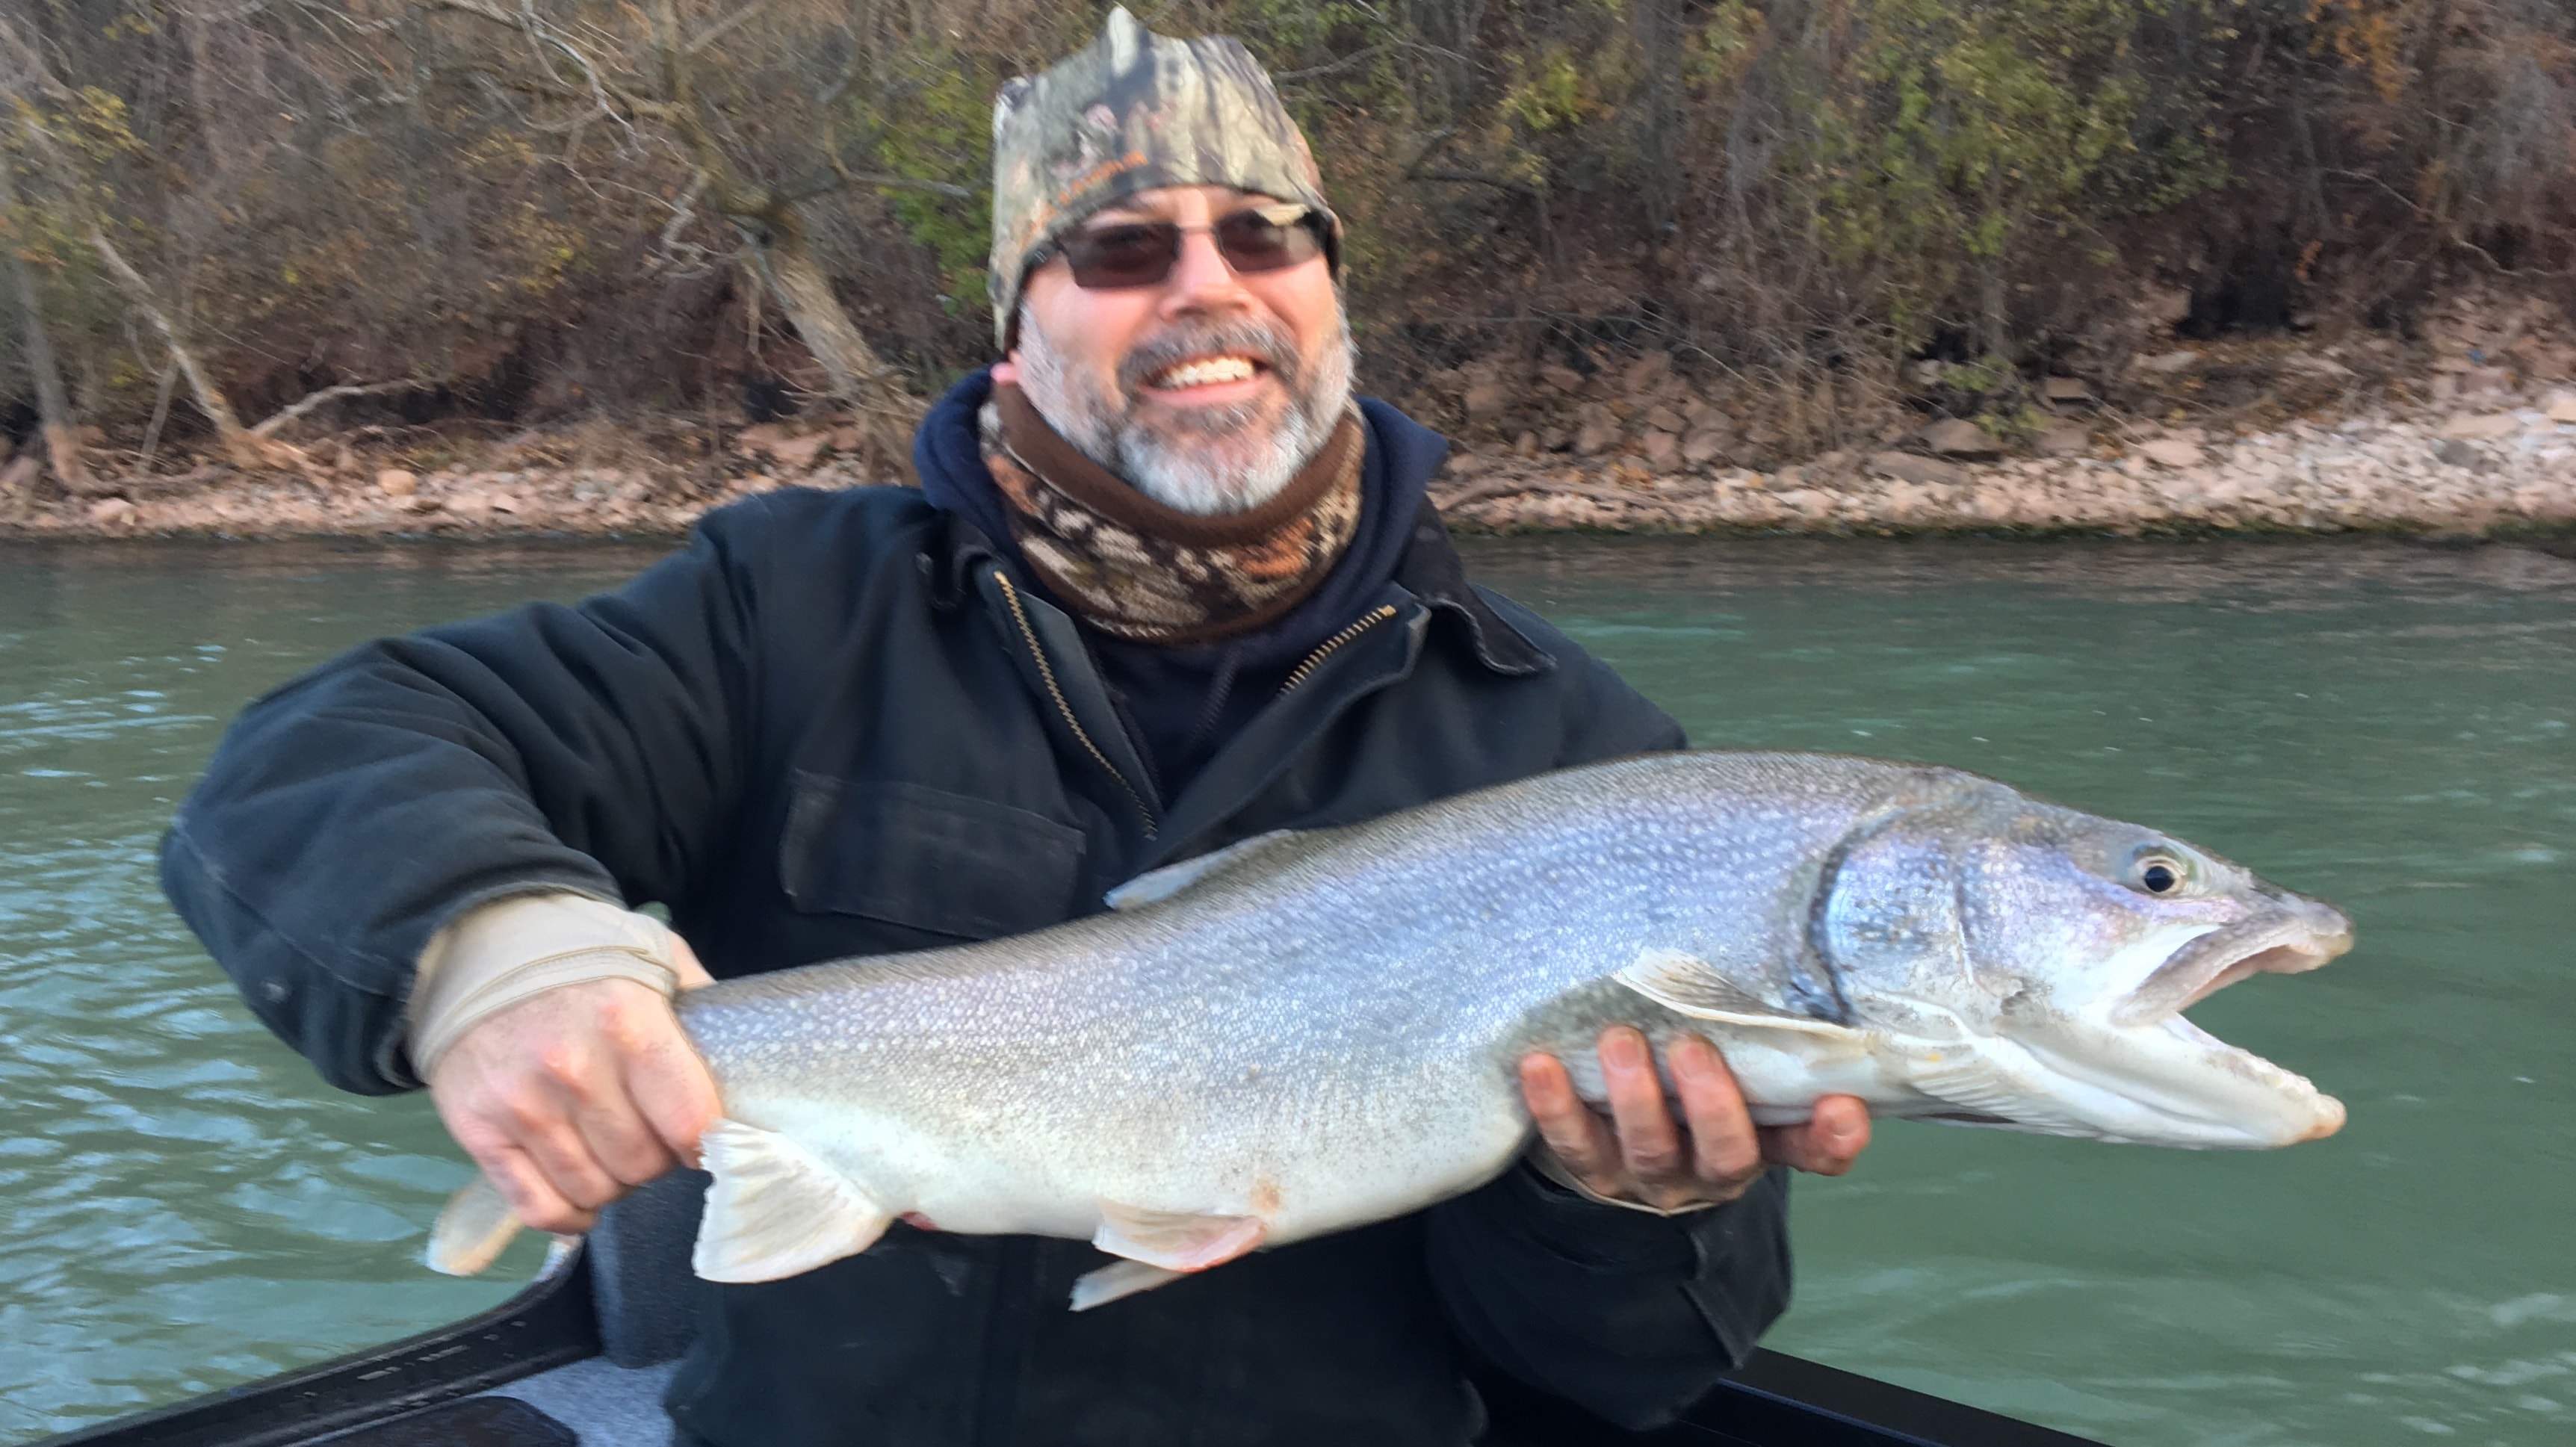 20171124 131841109 iOS - Winter Charter Fishing in Buffalo Niagara